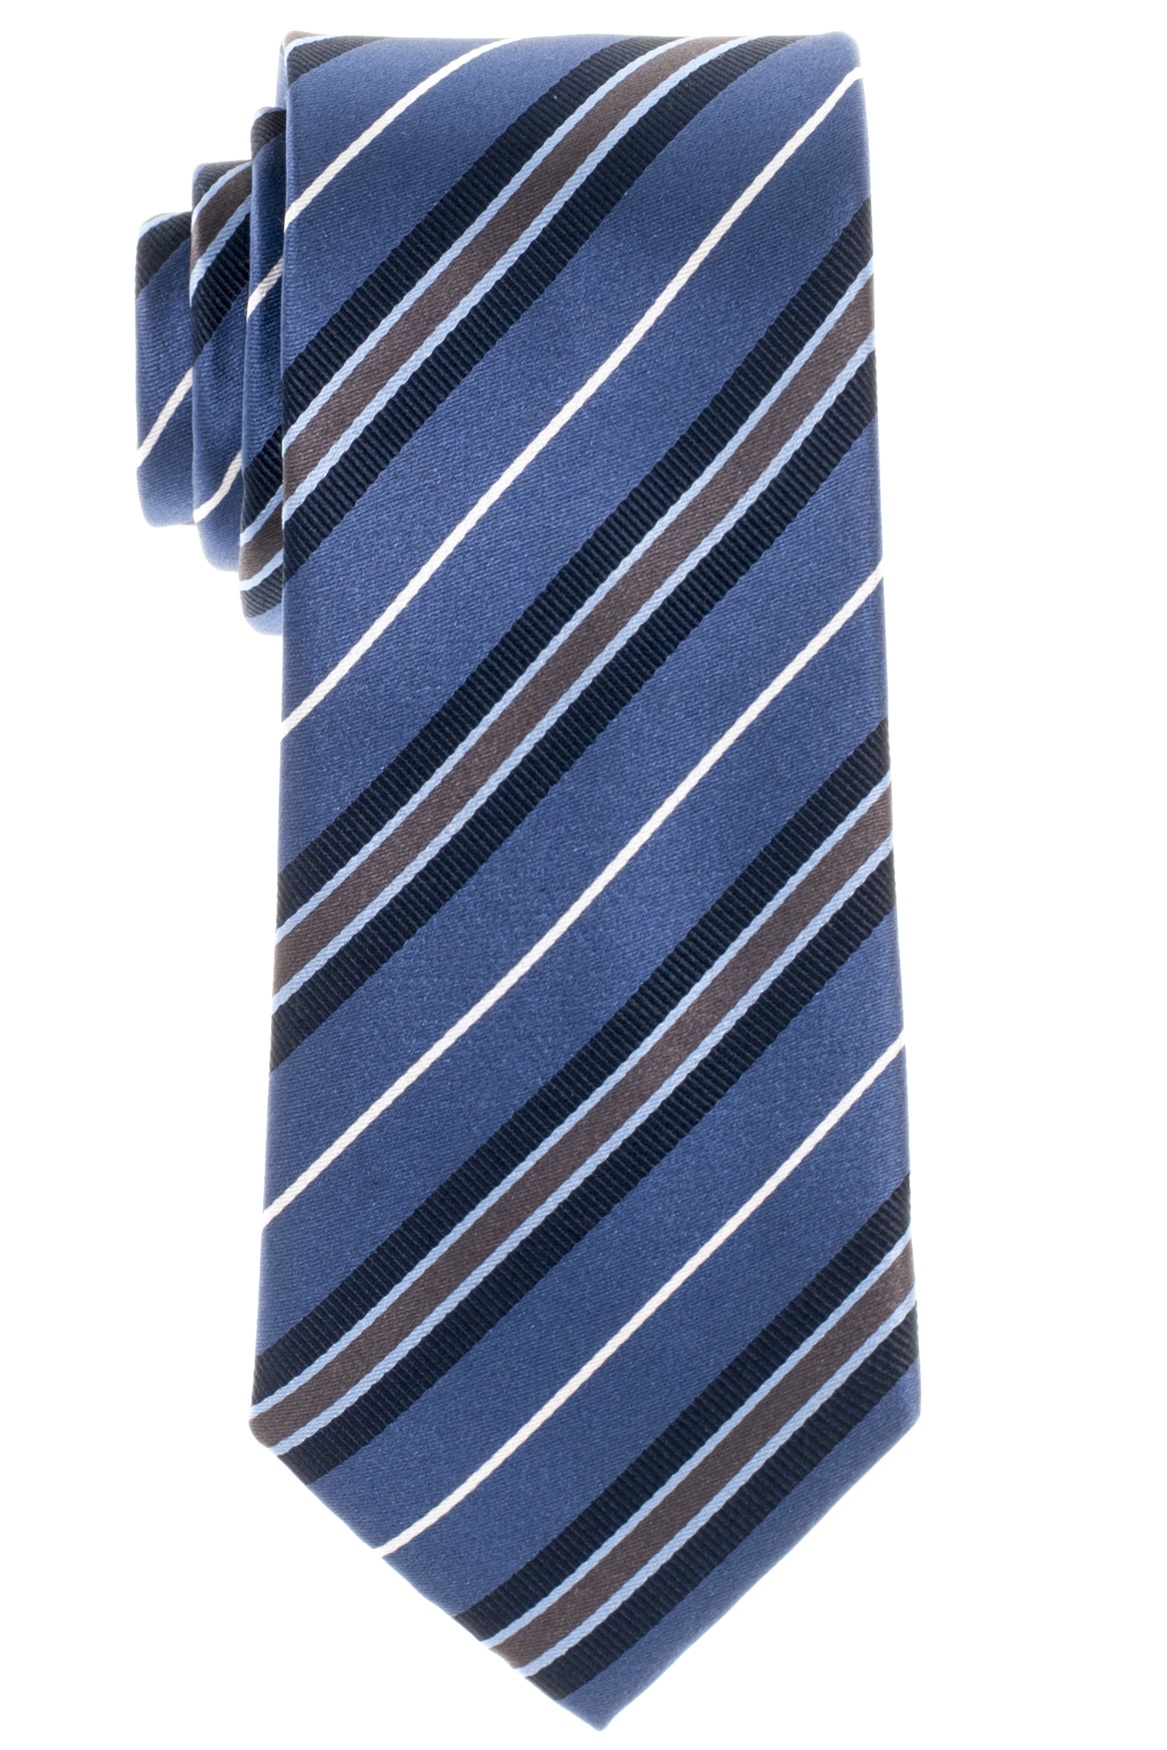 Gestreifte Eterna Krawatte 72 ETERNA + in Extra grau-braun weiß und 68 Hemden cm Olymp marine und | Lang blau